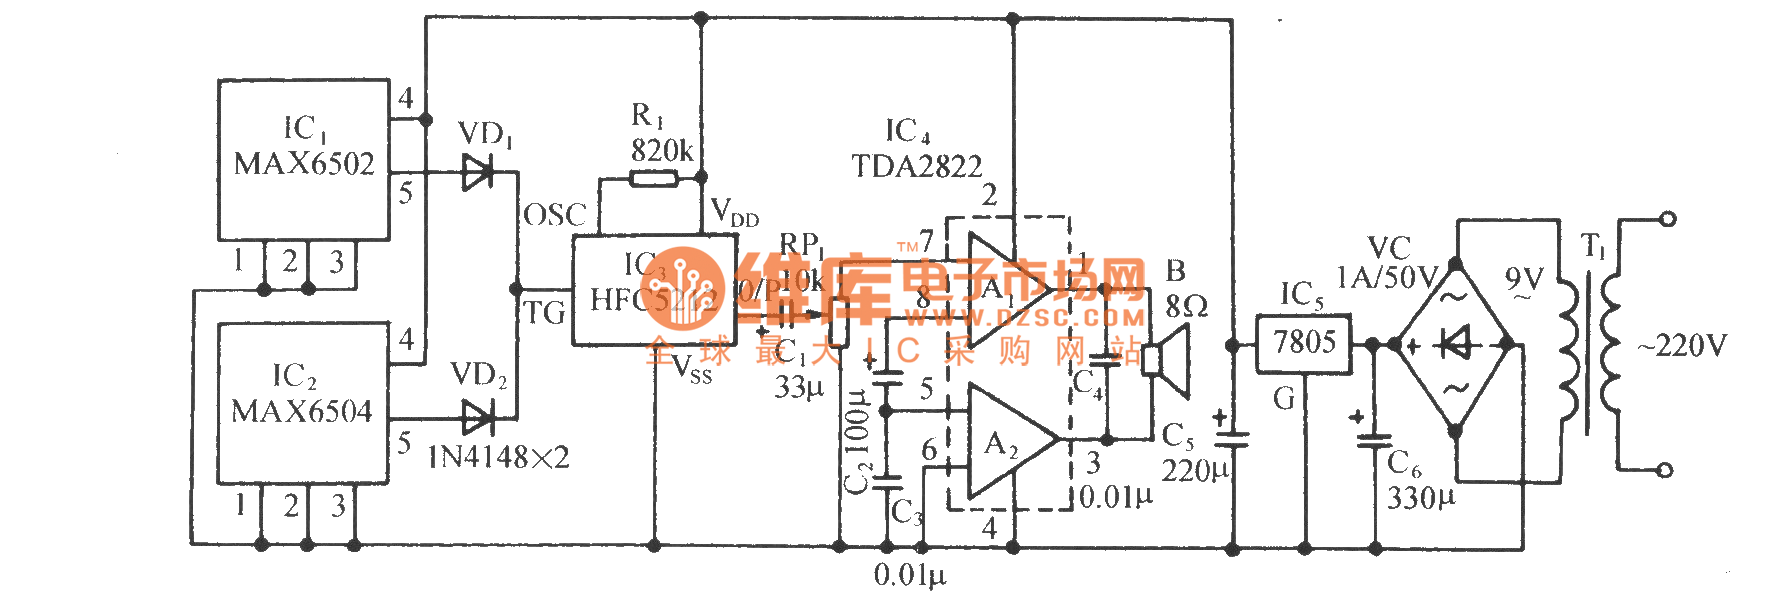 温度窗口超限告警电路(MAX6502/4)